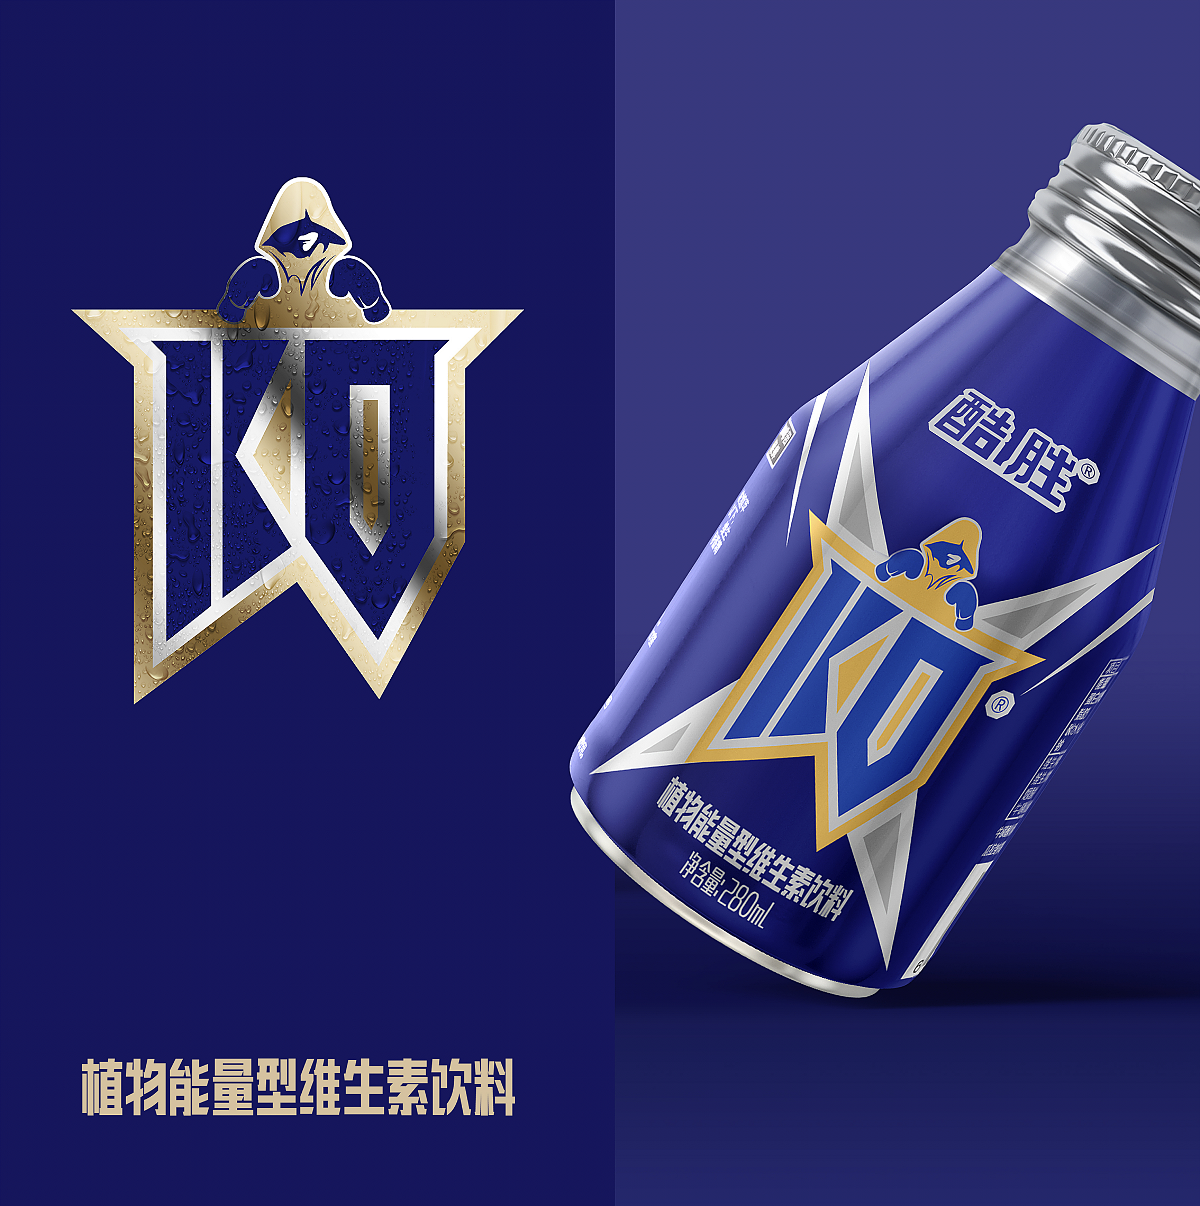 郑州本质品牌案例——「酷盛ko功能饮料」包装设计